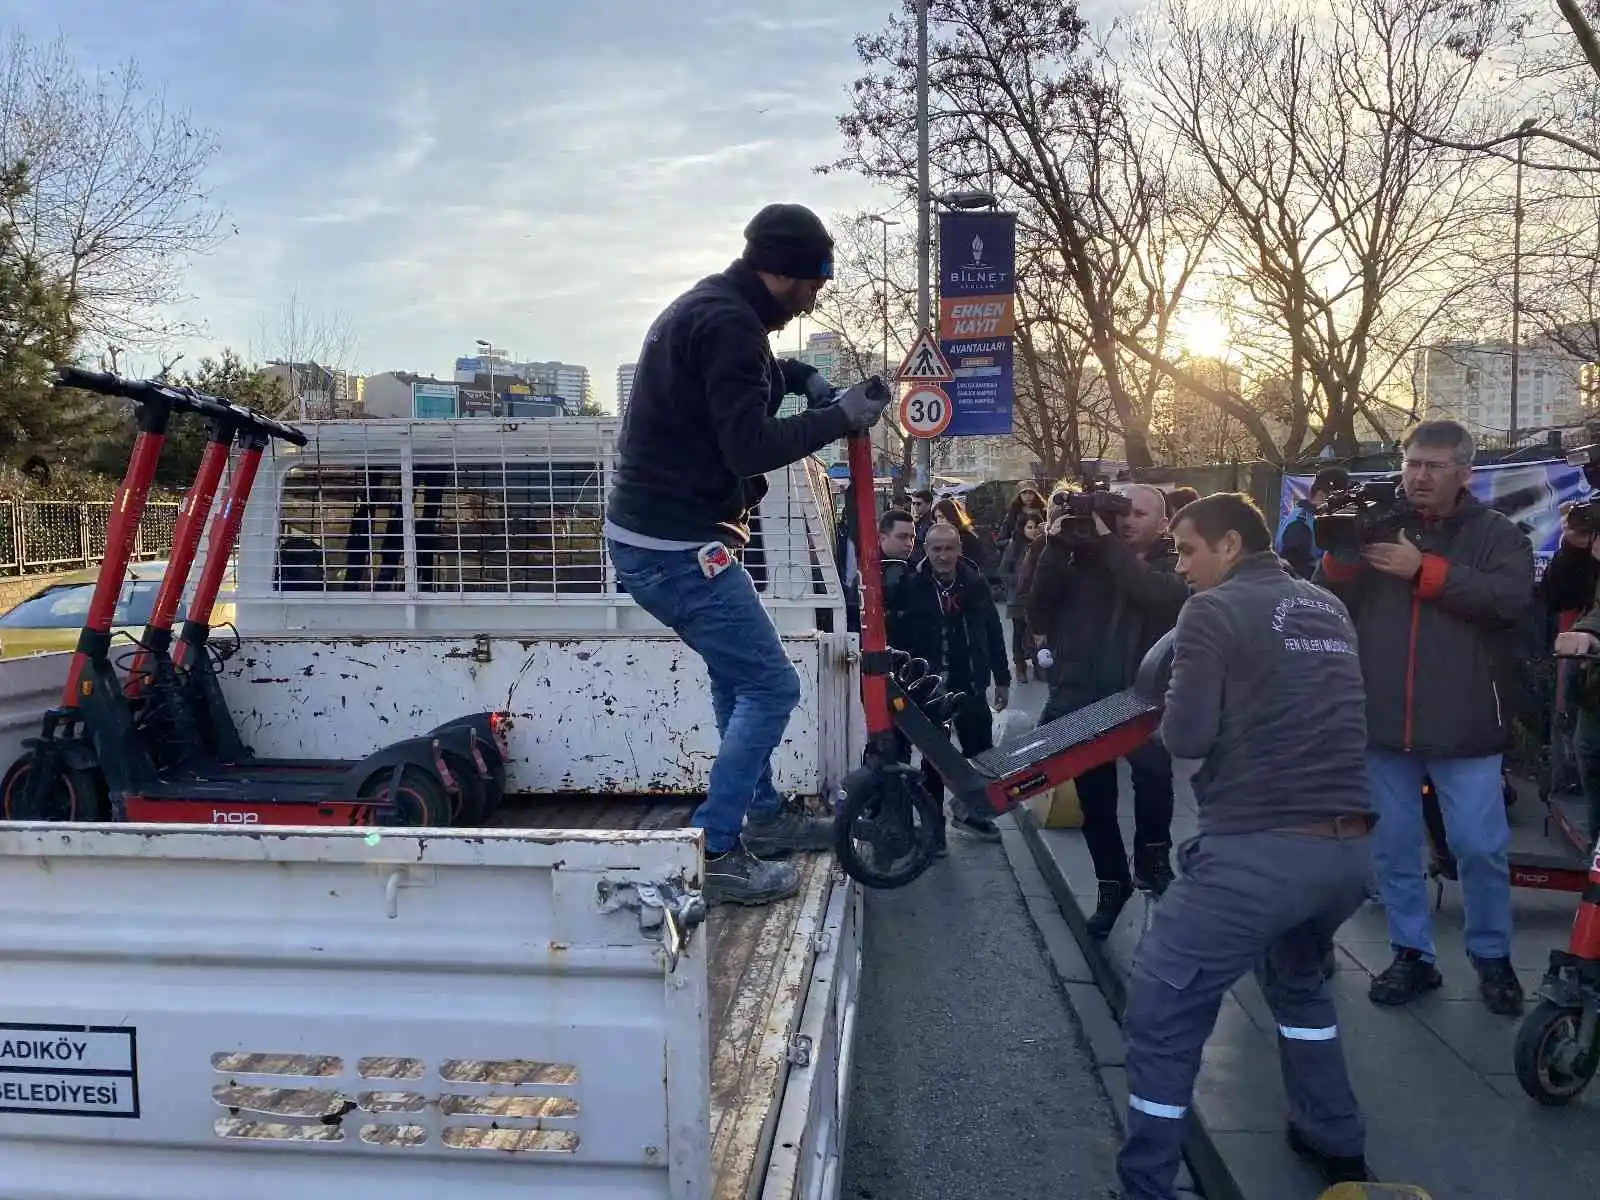 Kadıköy Belediyesi kaldırımdaki scooterları topladı
